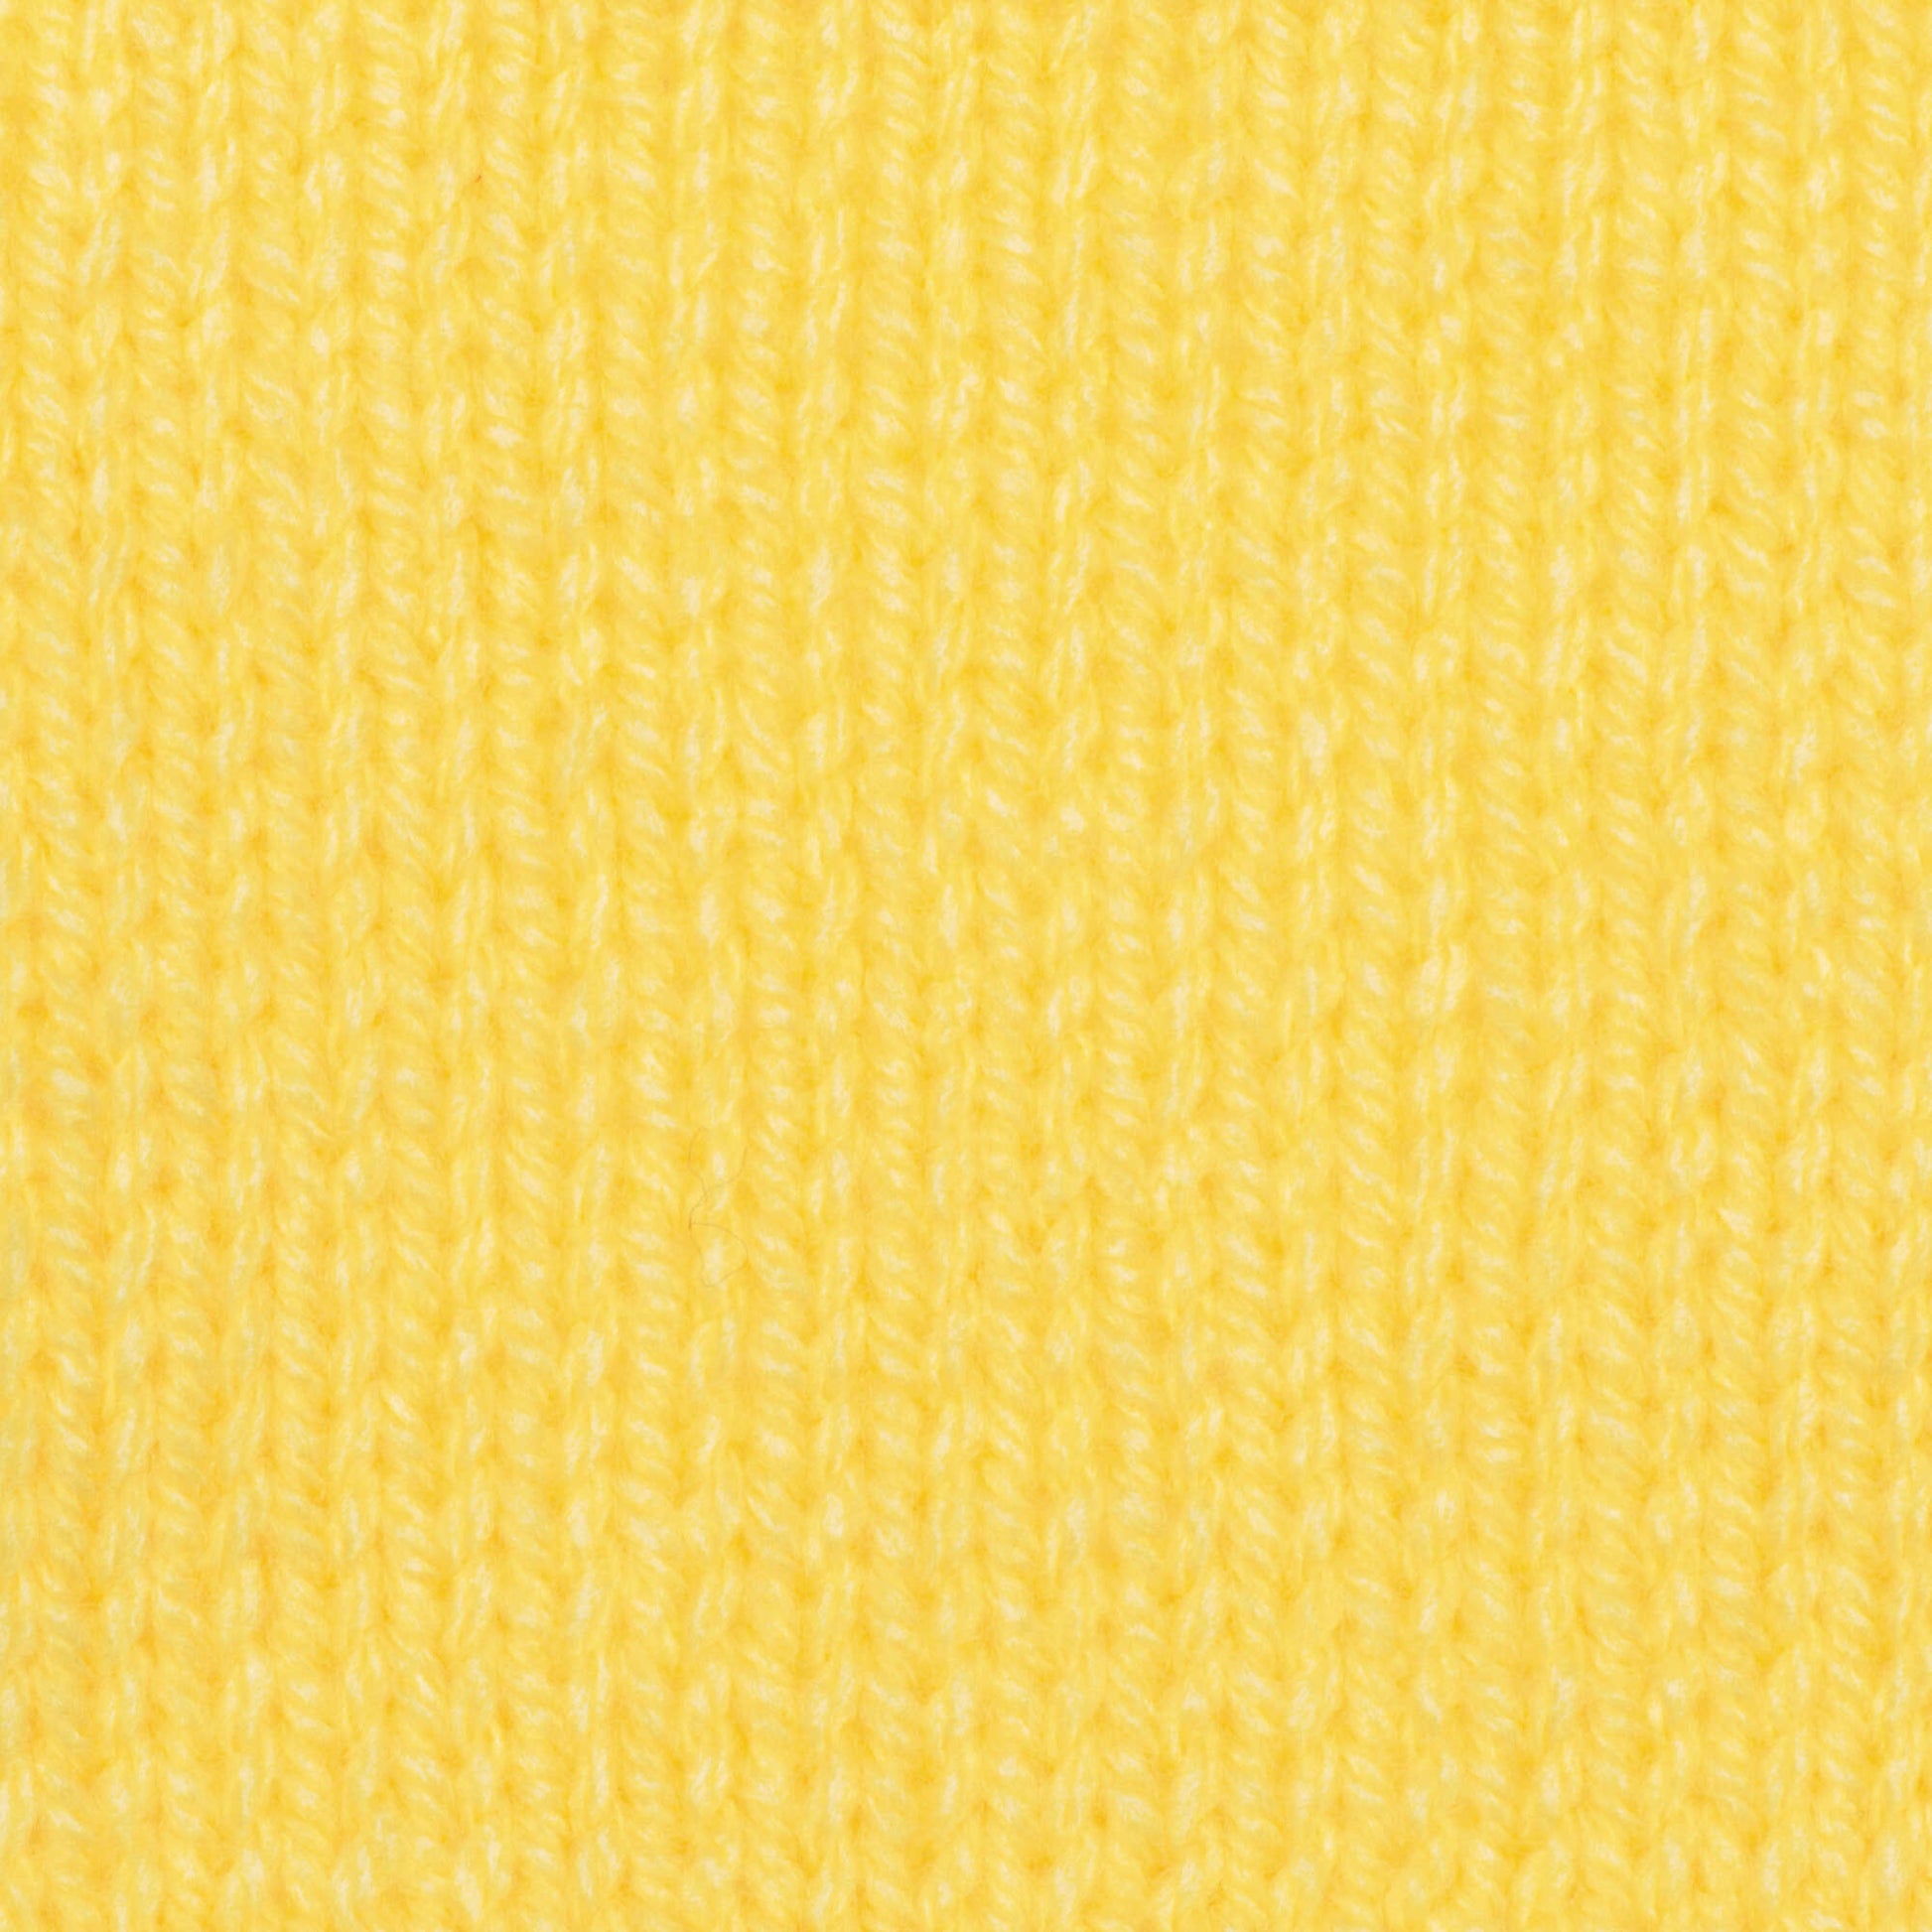 Patons Astra Yarn Maize Yellow